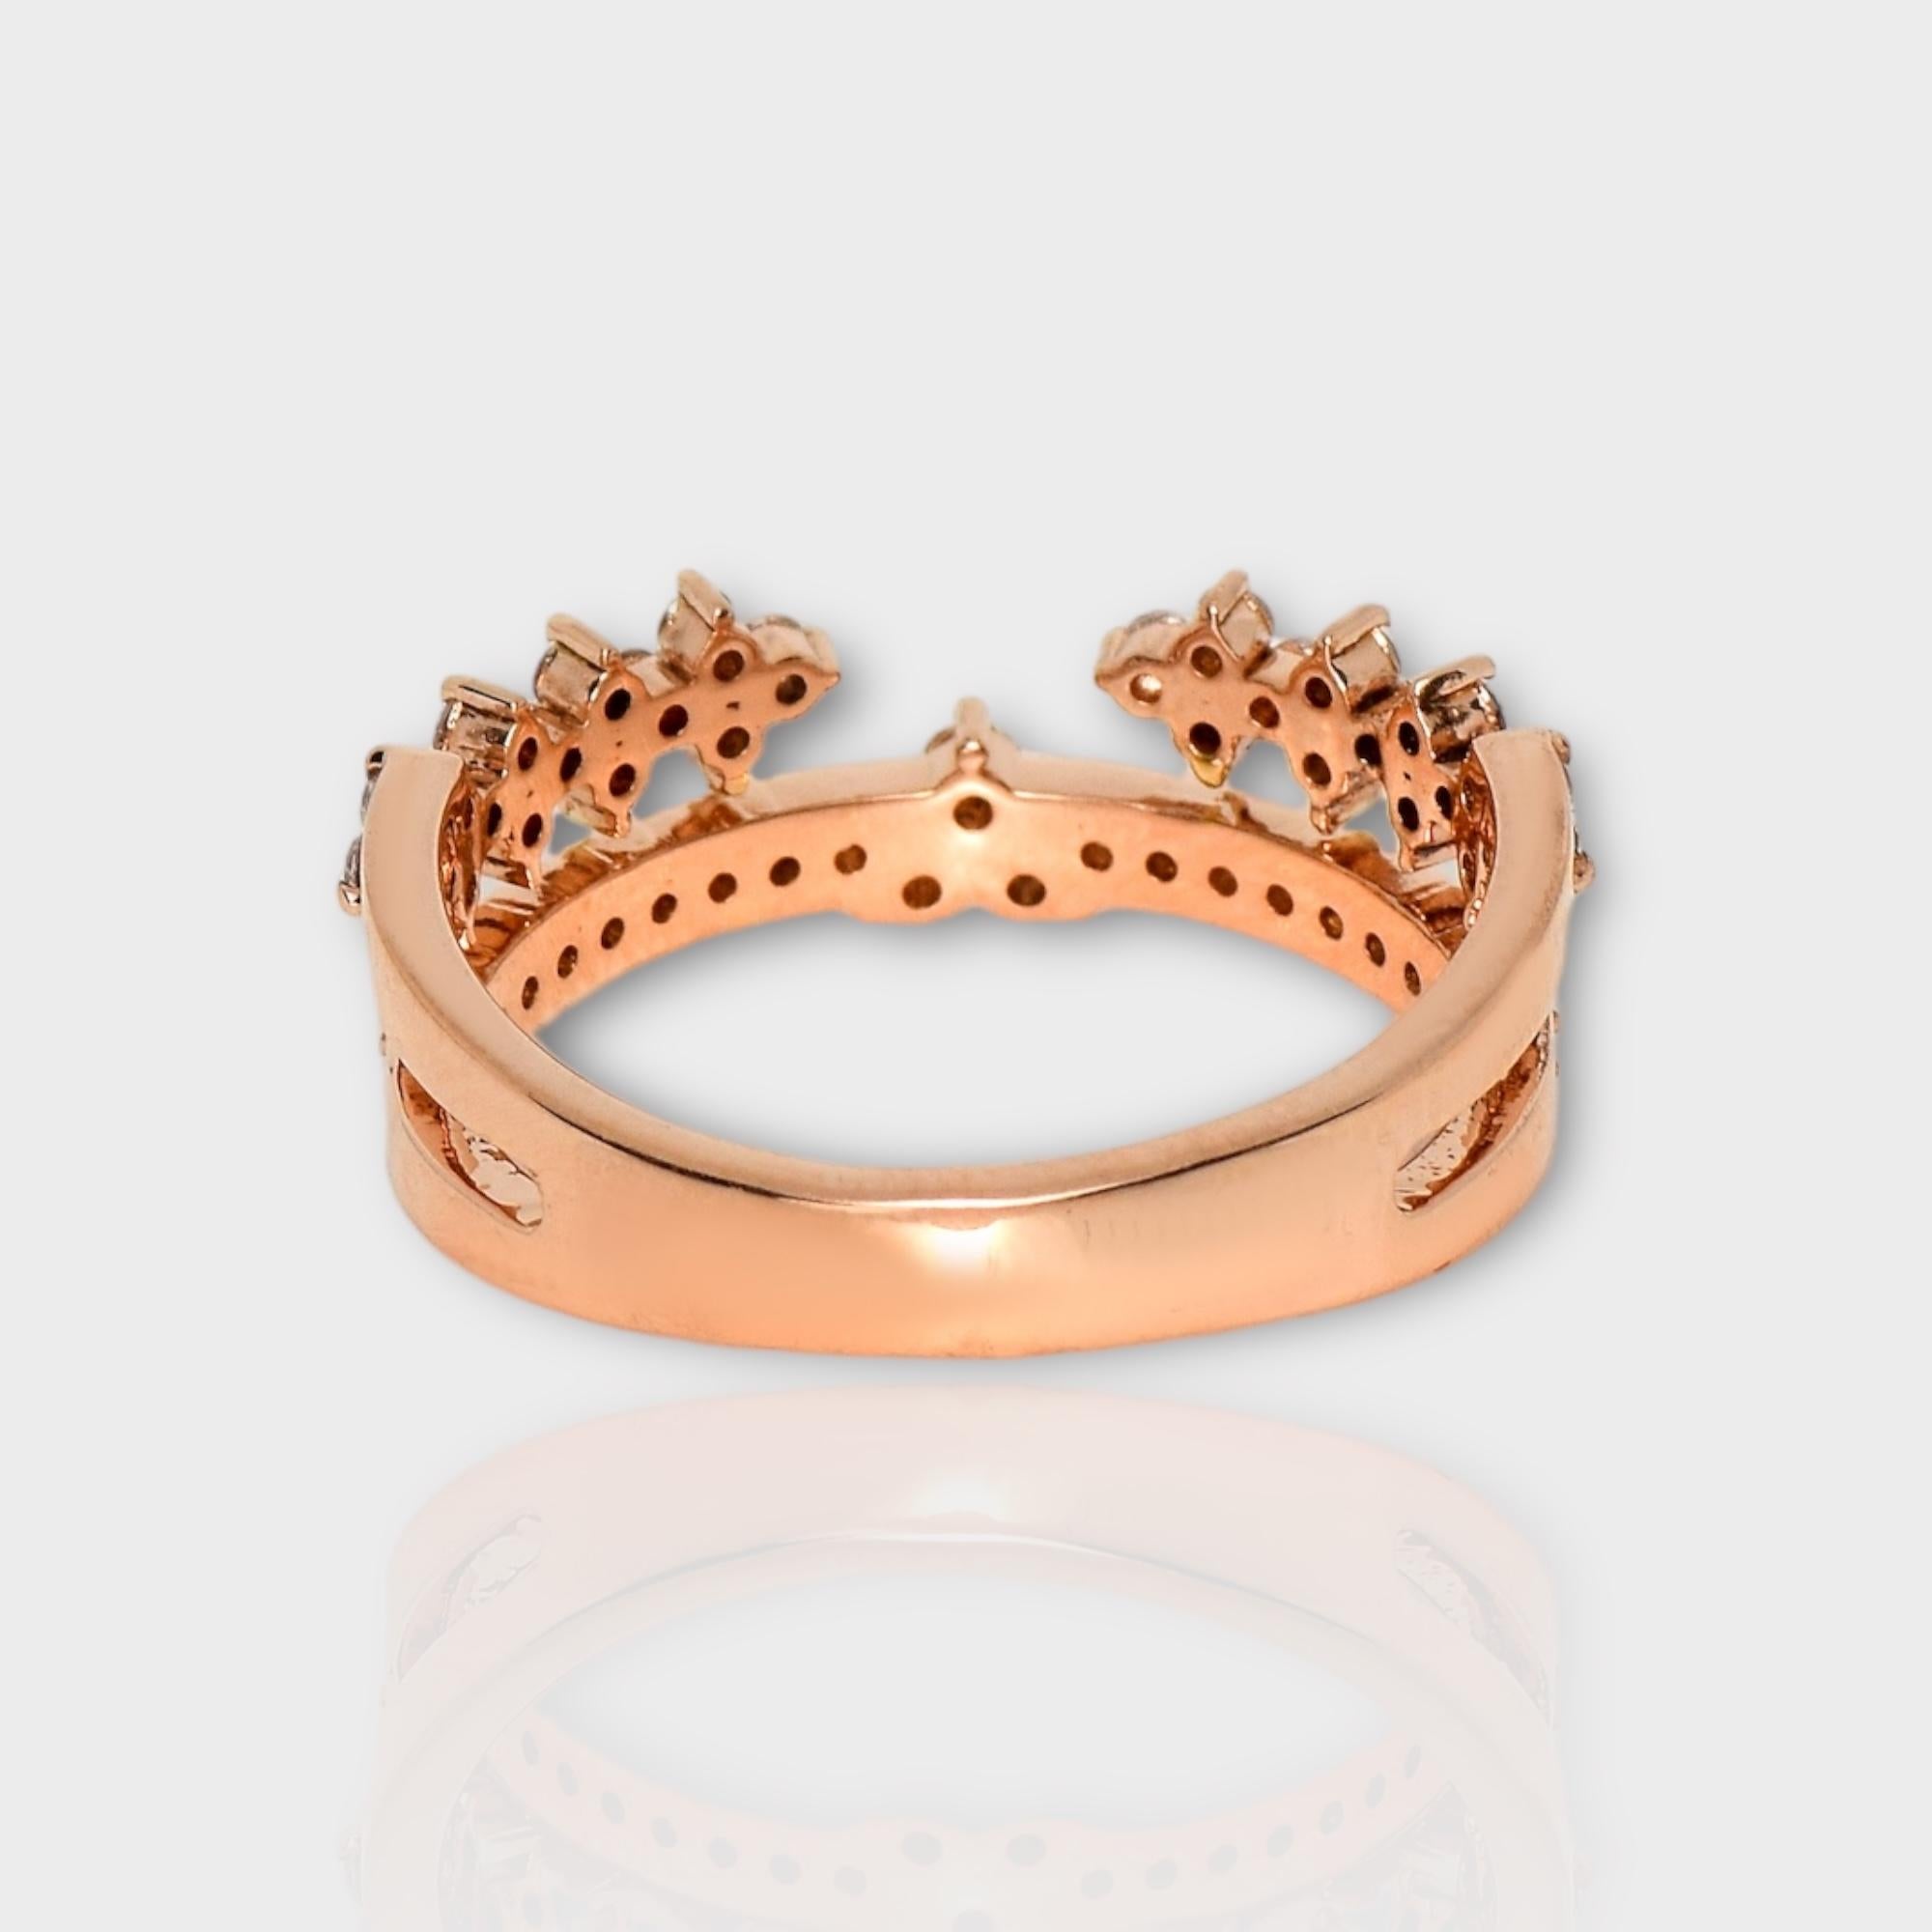 IGI 14K 0.51 ct Natural Pink Diamonds Vintage Crown Design Engagement Ring For Sale 2